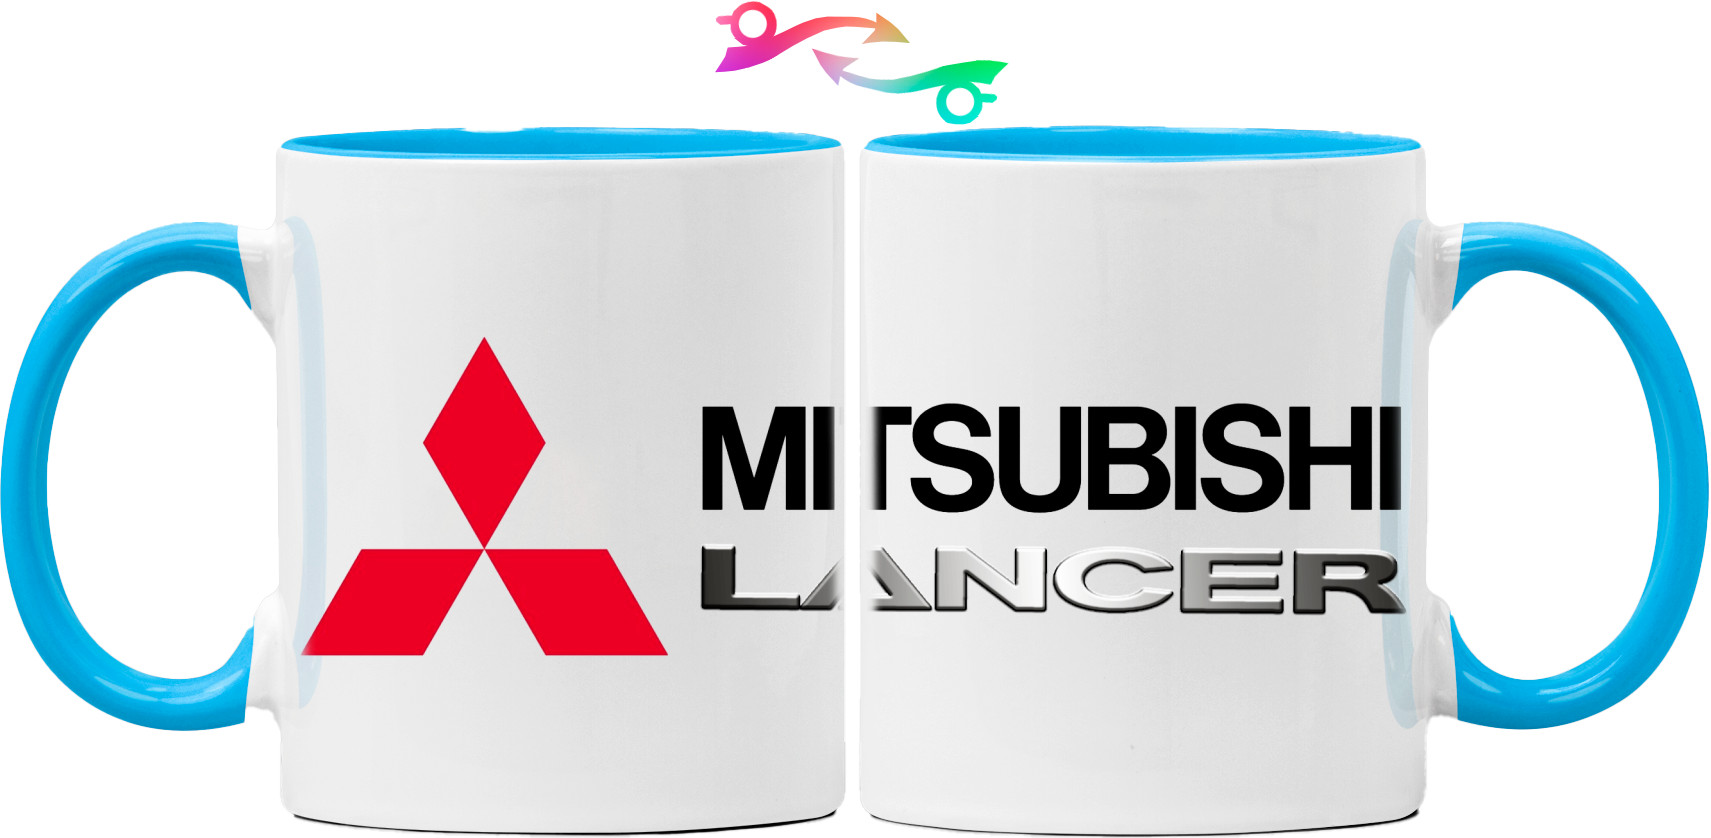 Mitsubishi - Logo - Lancer - 1